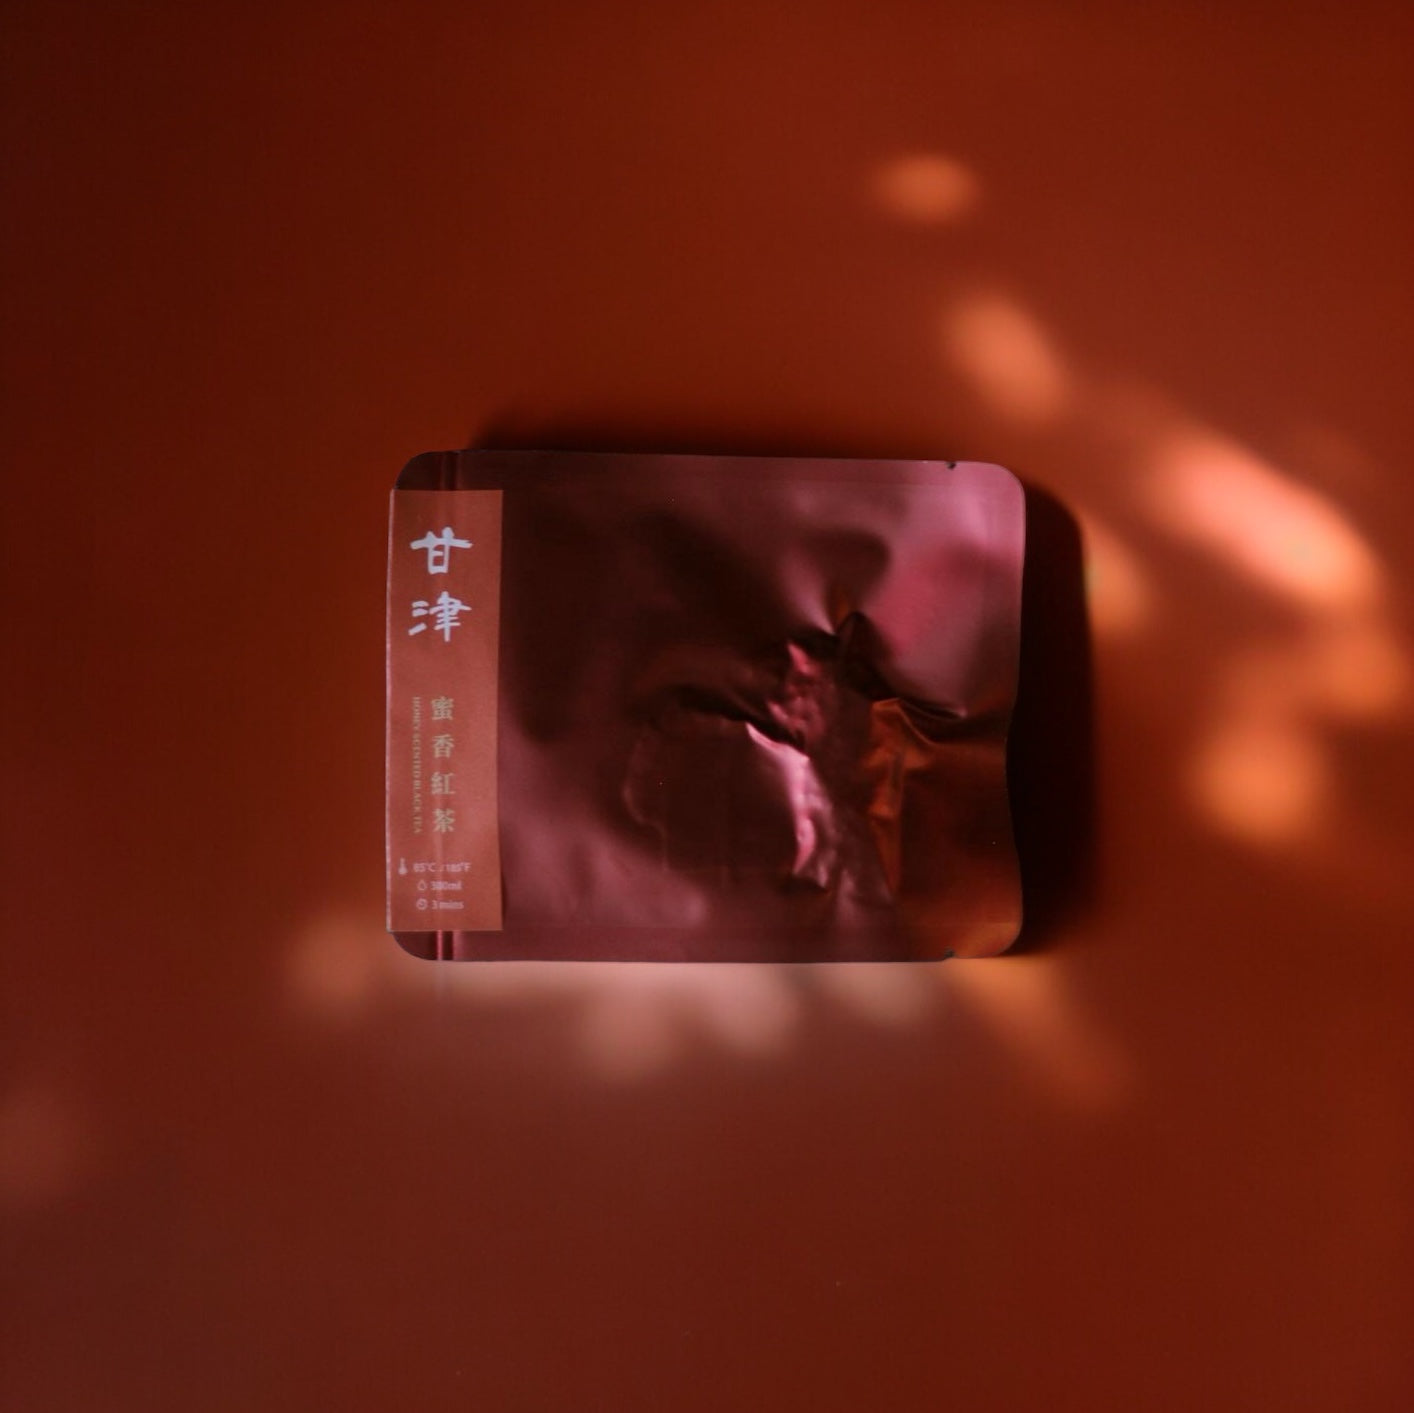 【單包體驗】獨立真空鎖味 臺灣茶三角茶包